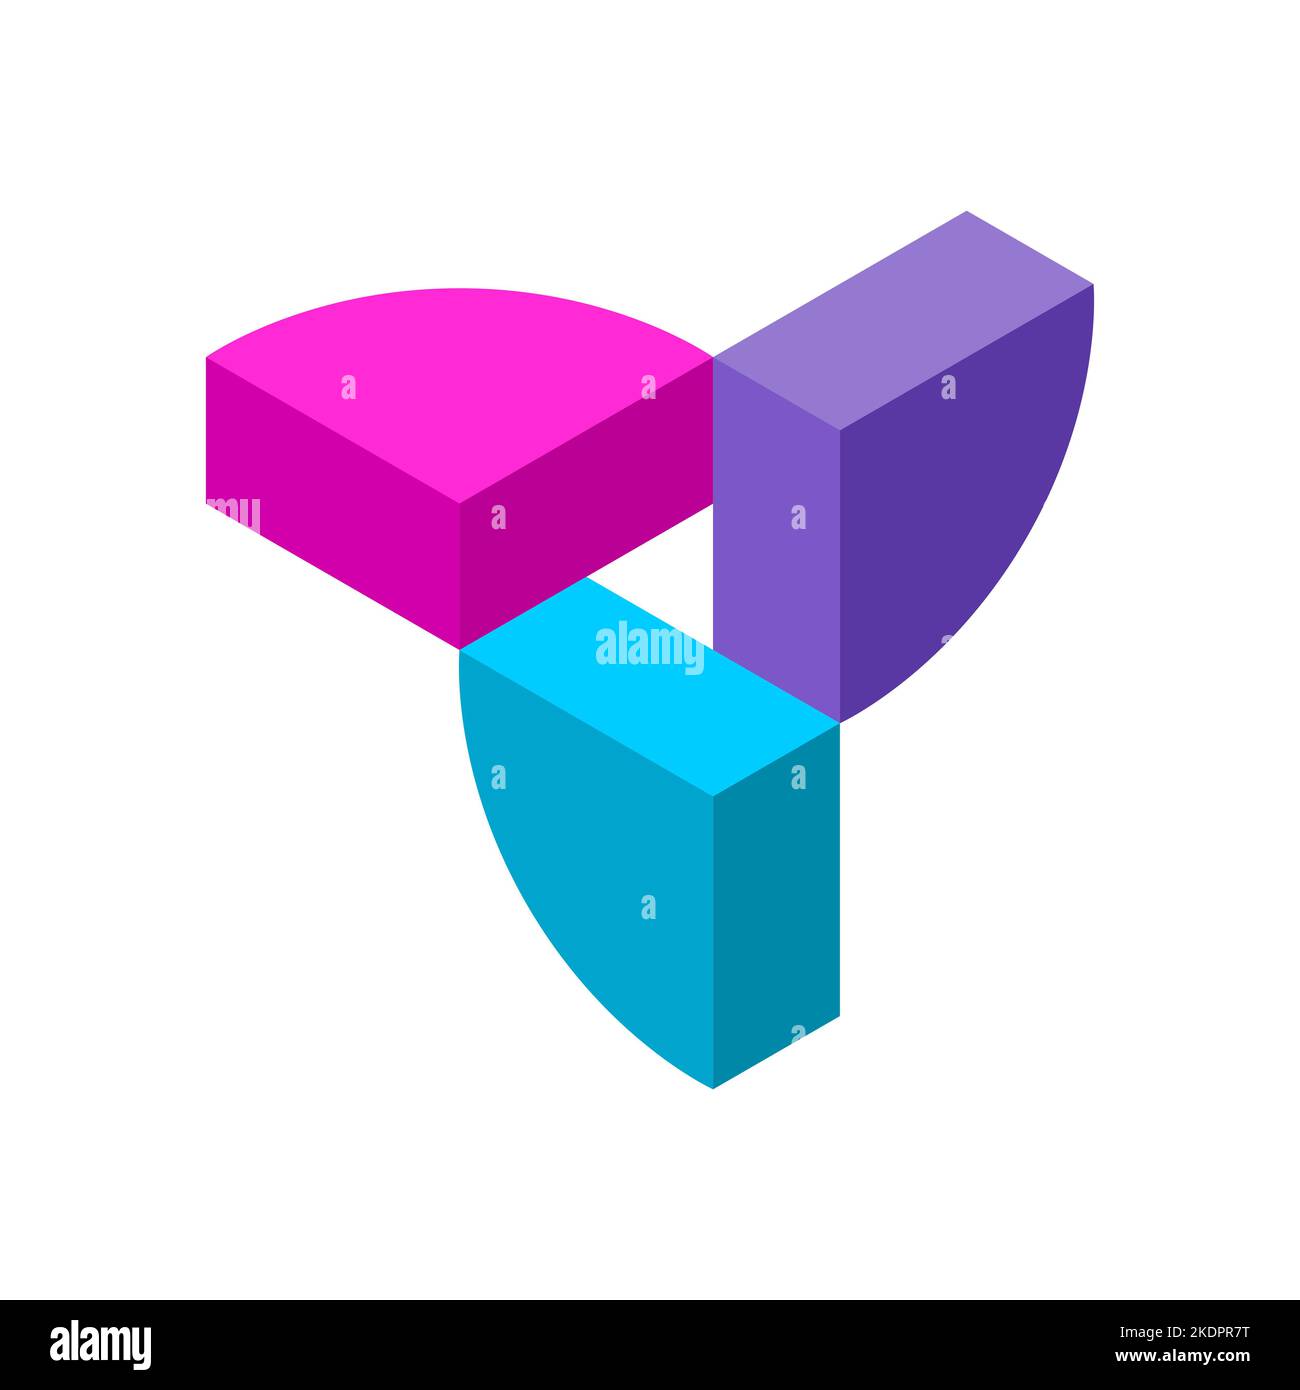 Modello colorato con logo 3D. Quarti di un cerchio intorno alla forma di un triangolo. Gli elementi isometrici rosa, blu e viola fanno un'Unione. Vettore Illustrazione Vettoriale